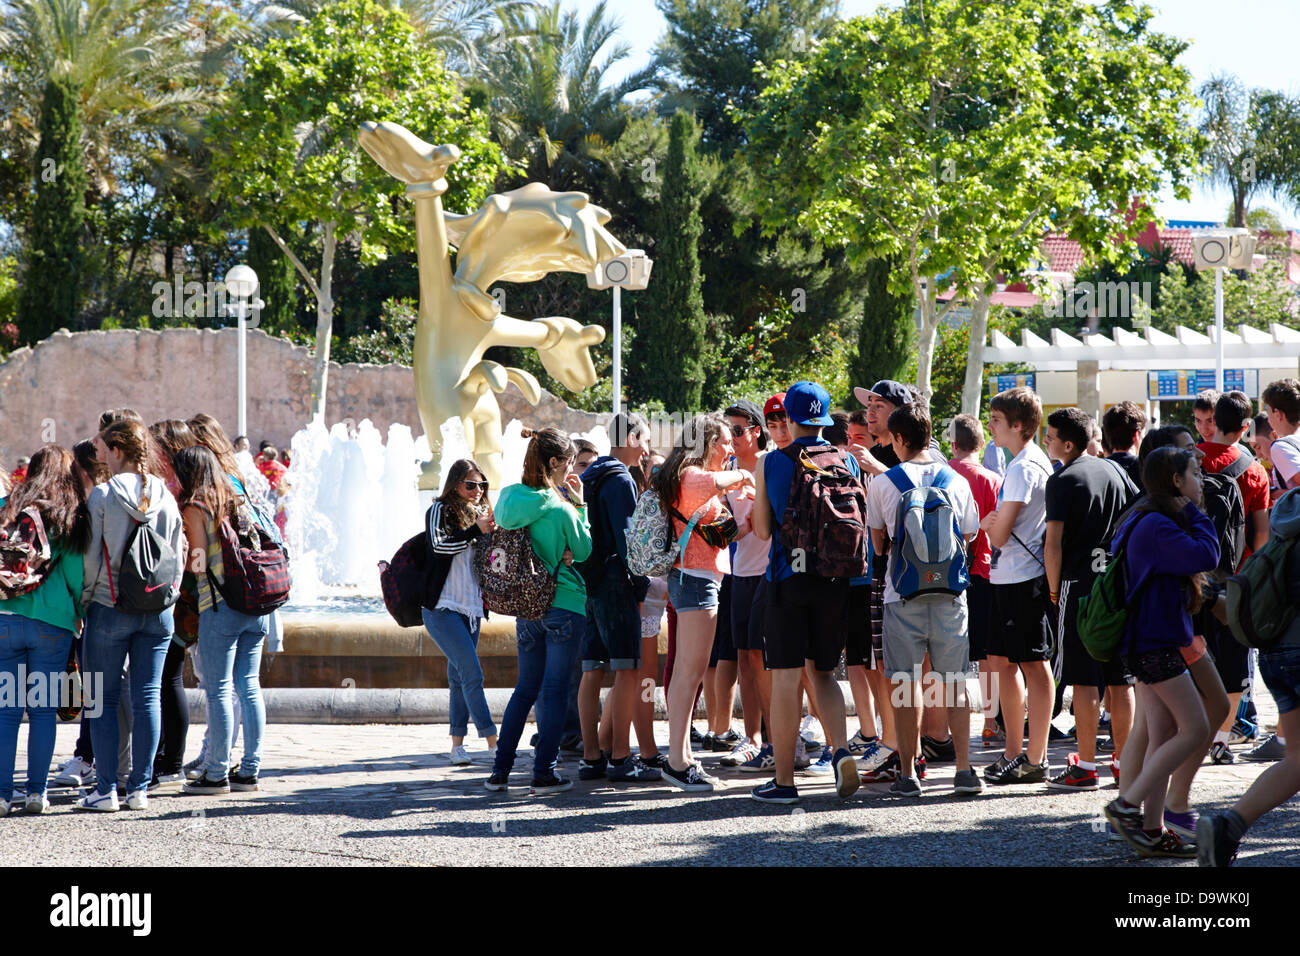 Grupos de adolescentes esperando para entrar en el parque temático portaventura salou, Cataluña, España Foto de stock